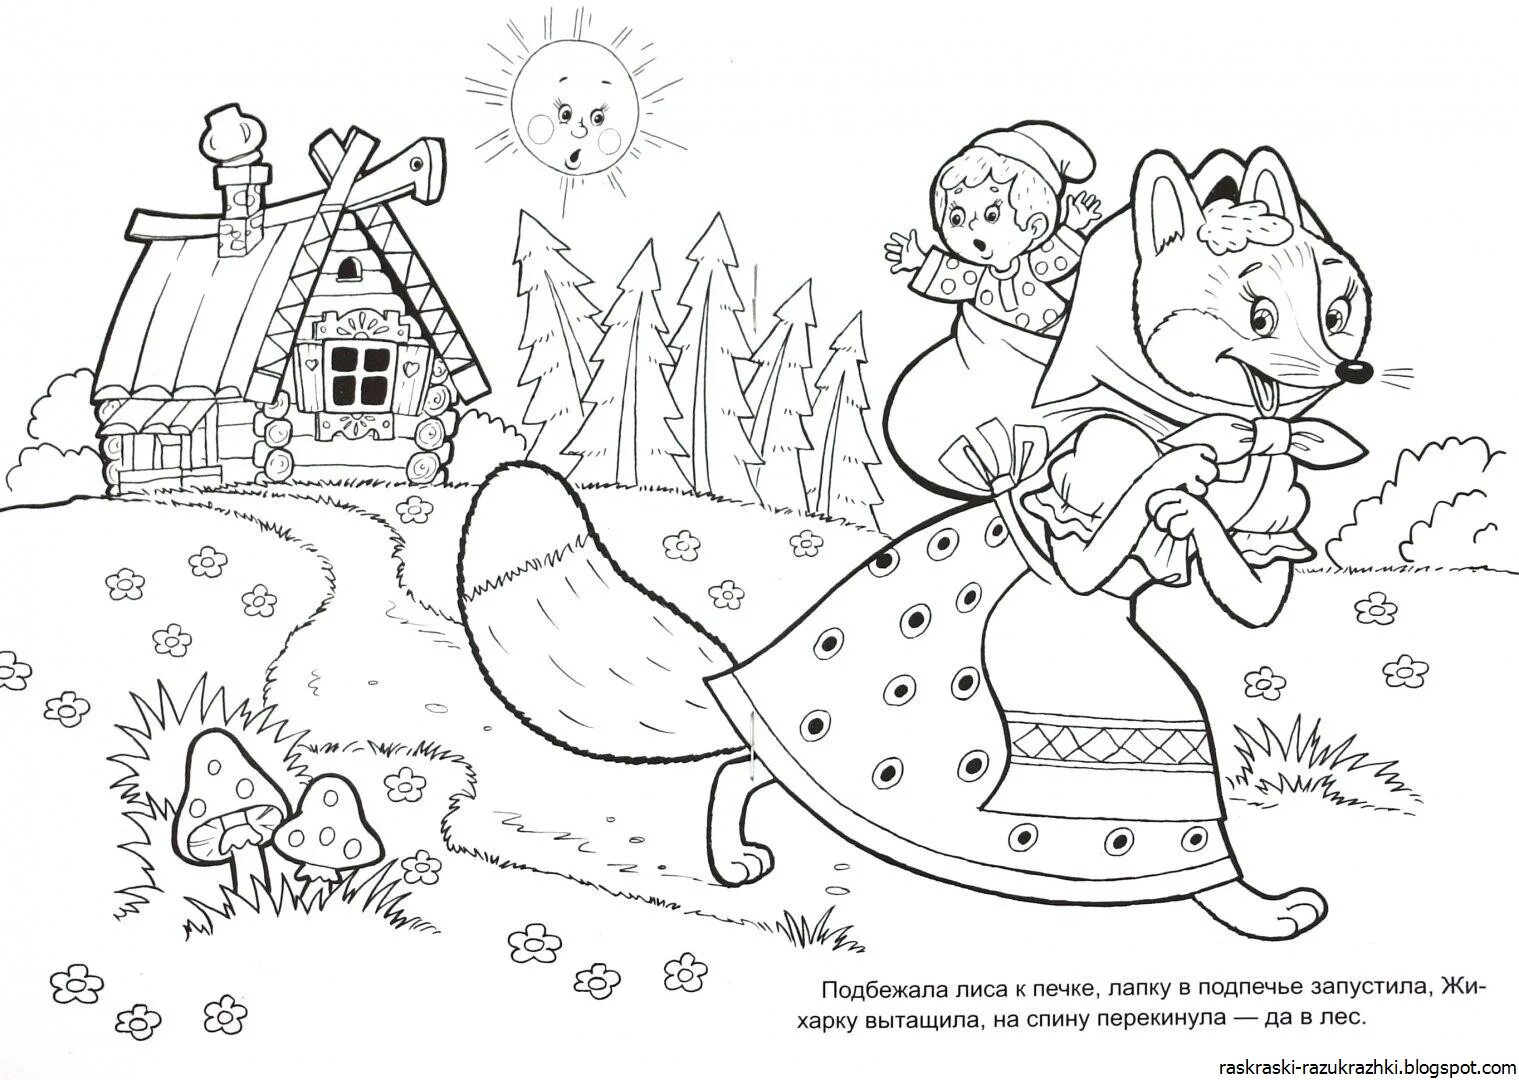 Based on Russian folk tales for preschoolers #5